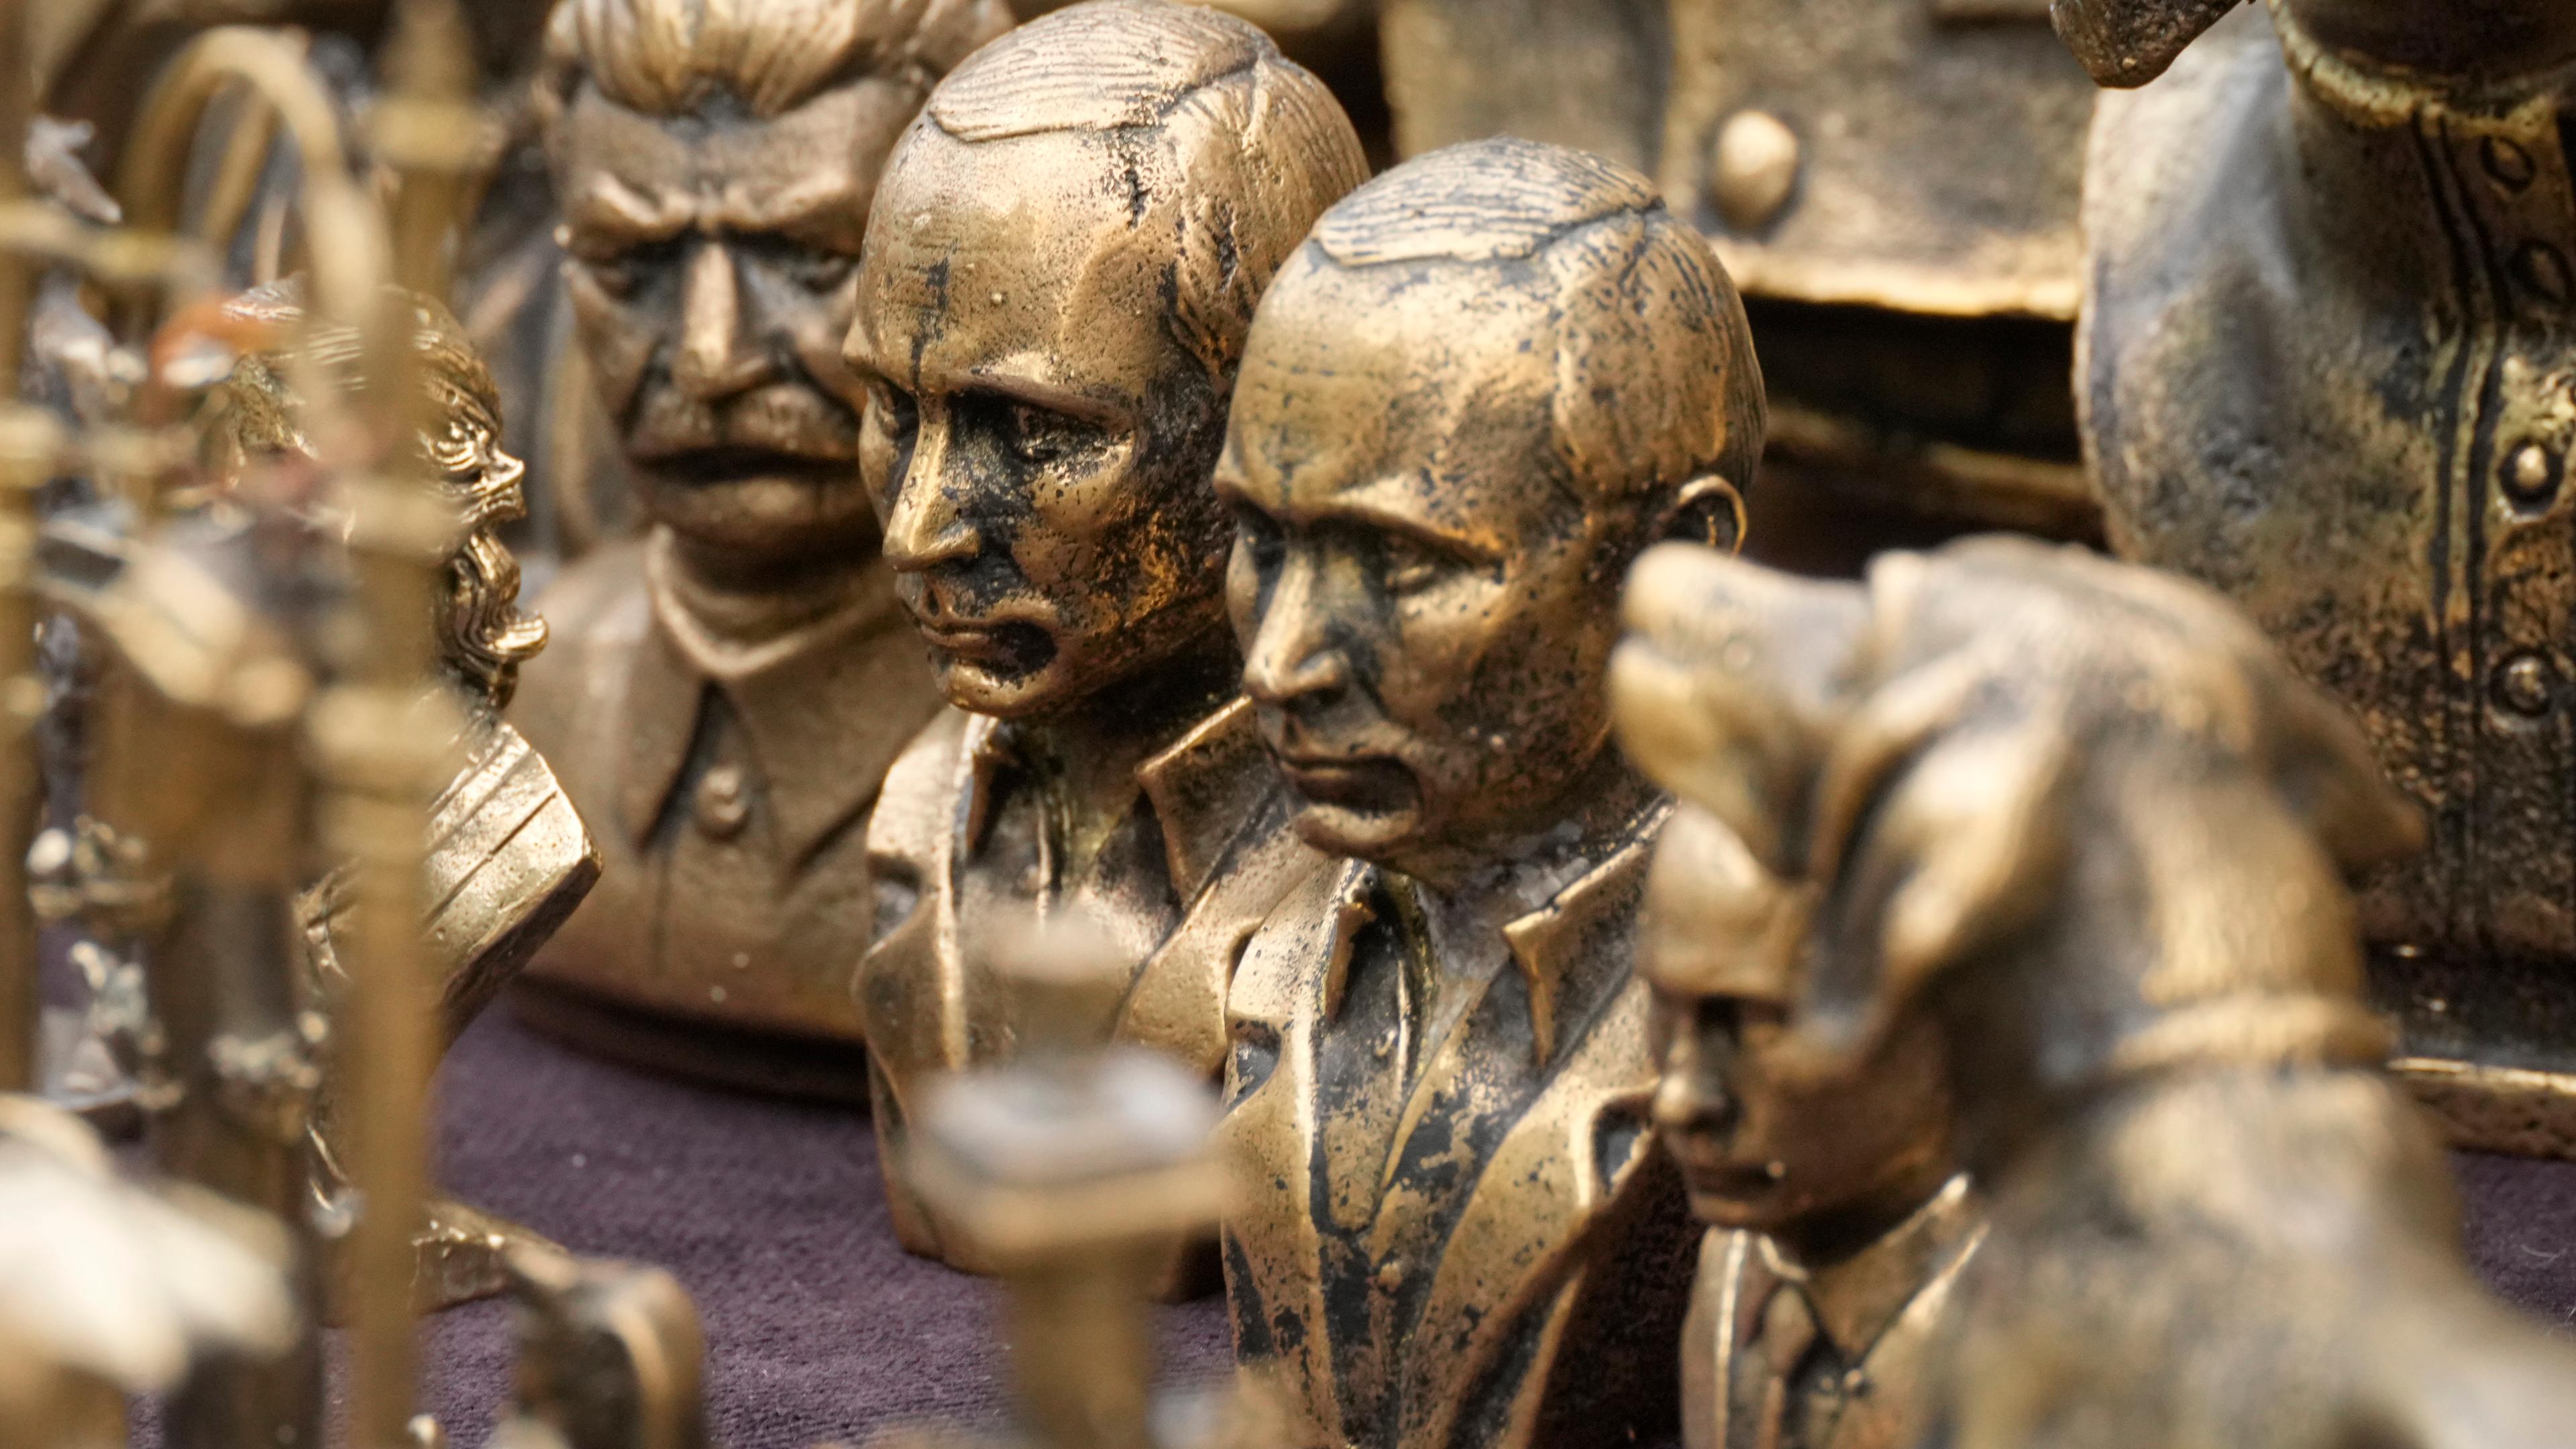 Russland, St. Petersburg: Büsten, die unter anderem den russischen Präsidenten Wladimir Putin und den sowjetischen Diktator Josef Stalin darstellen, werden in einem Souvenirladen zum Verkauf angeboten.